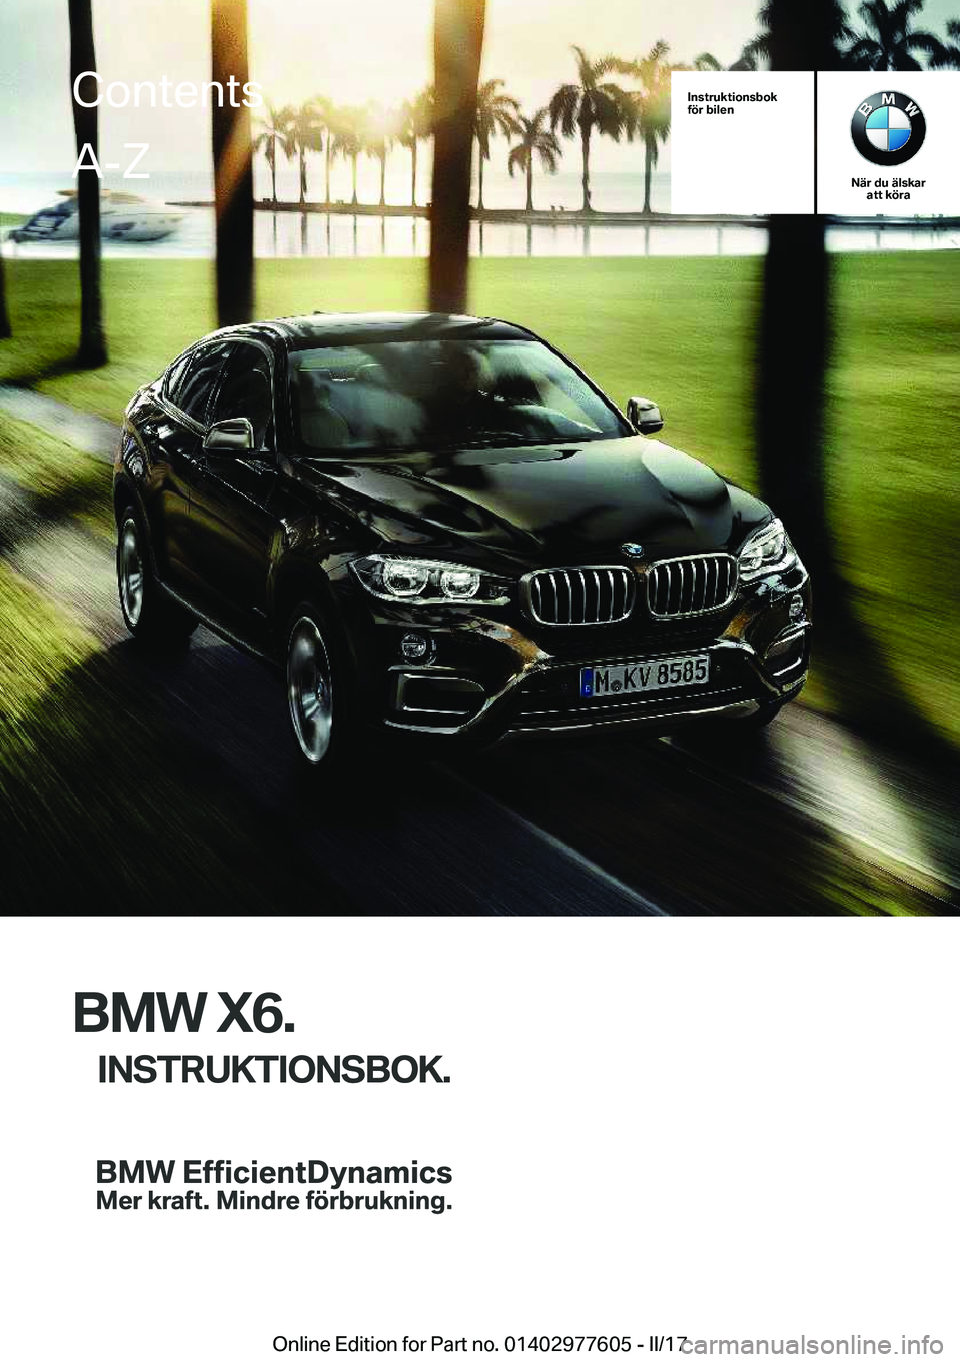 BMW X6 2017  InstruktionsbÖcker (in Swedish) �I�n�s�t�r�u�k�t�i�o�n�s�b�o�k
�f�